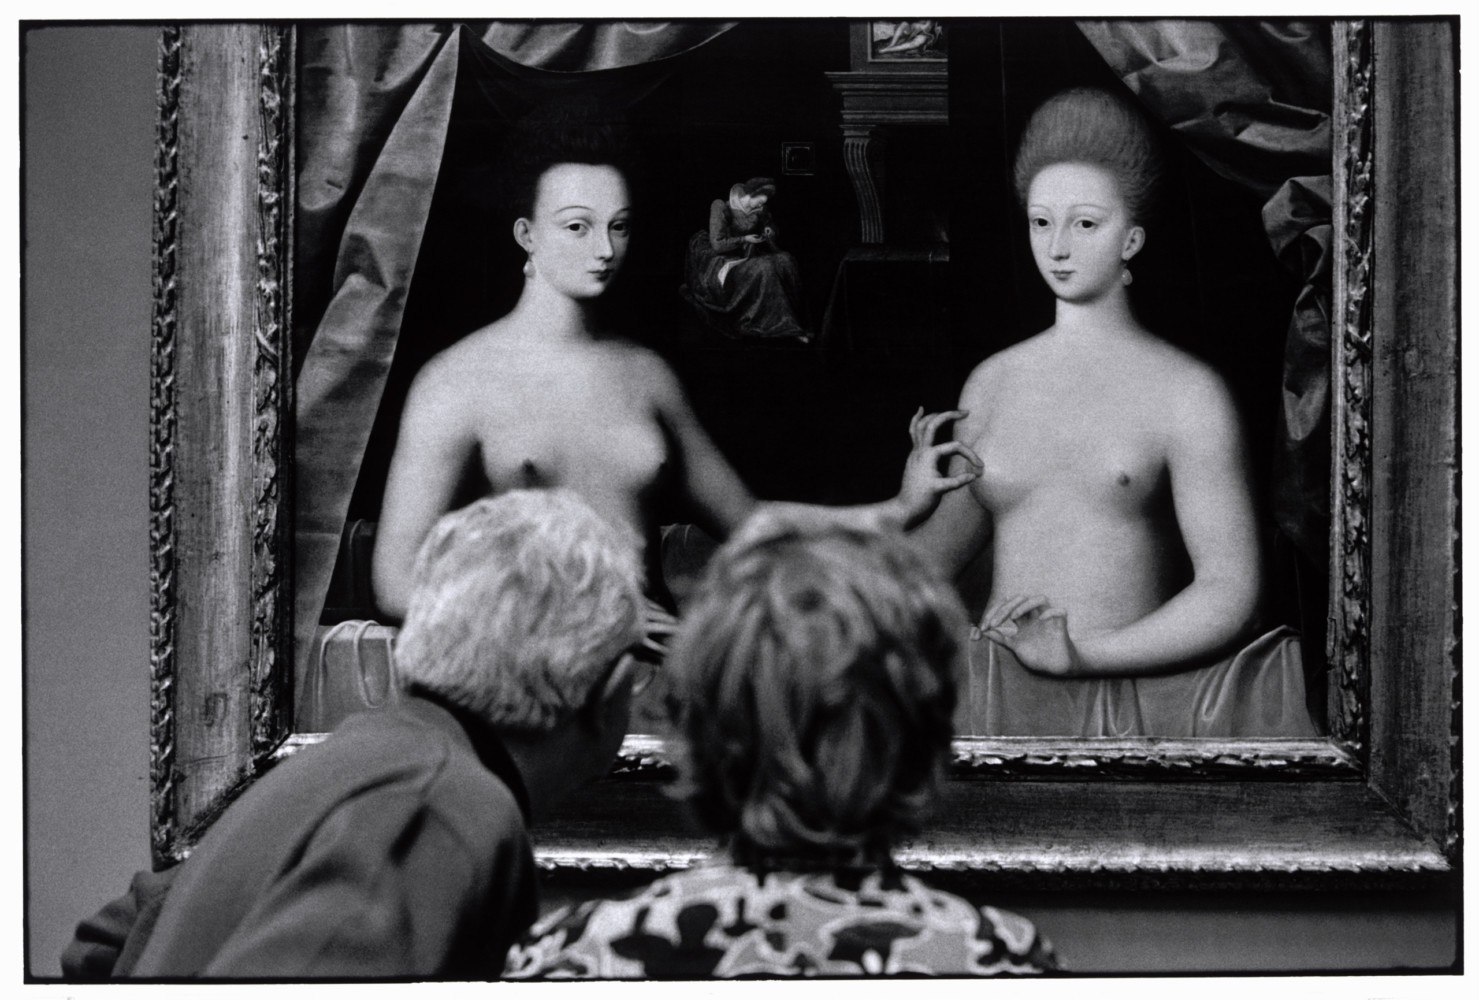 Предполагаемый портрет Габриэль дЭстре (фаворитки Генриха IV) с сестрой. Париж, Франция, 1975. Автор Эллиотт Эрвитт